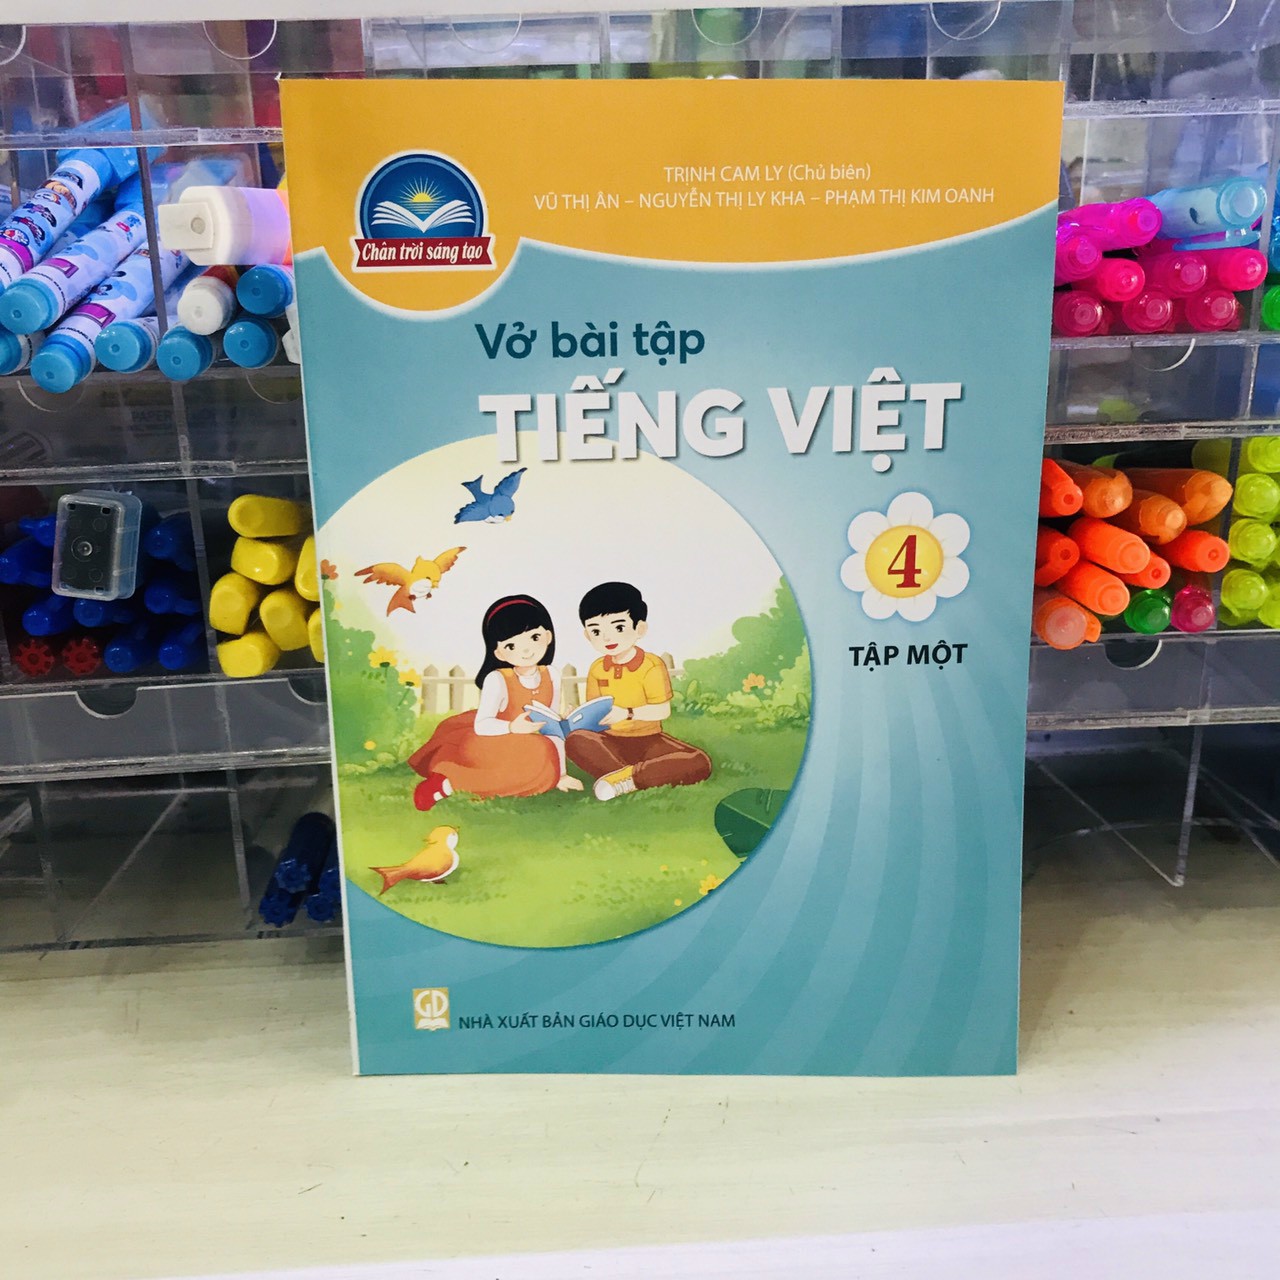 Toys, VBT Toán, Tiếng Việt 4 tập 1, 2 + 2 cây chì.